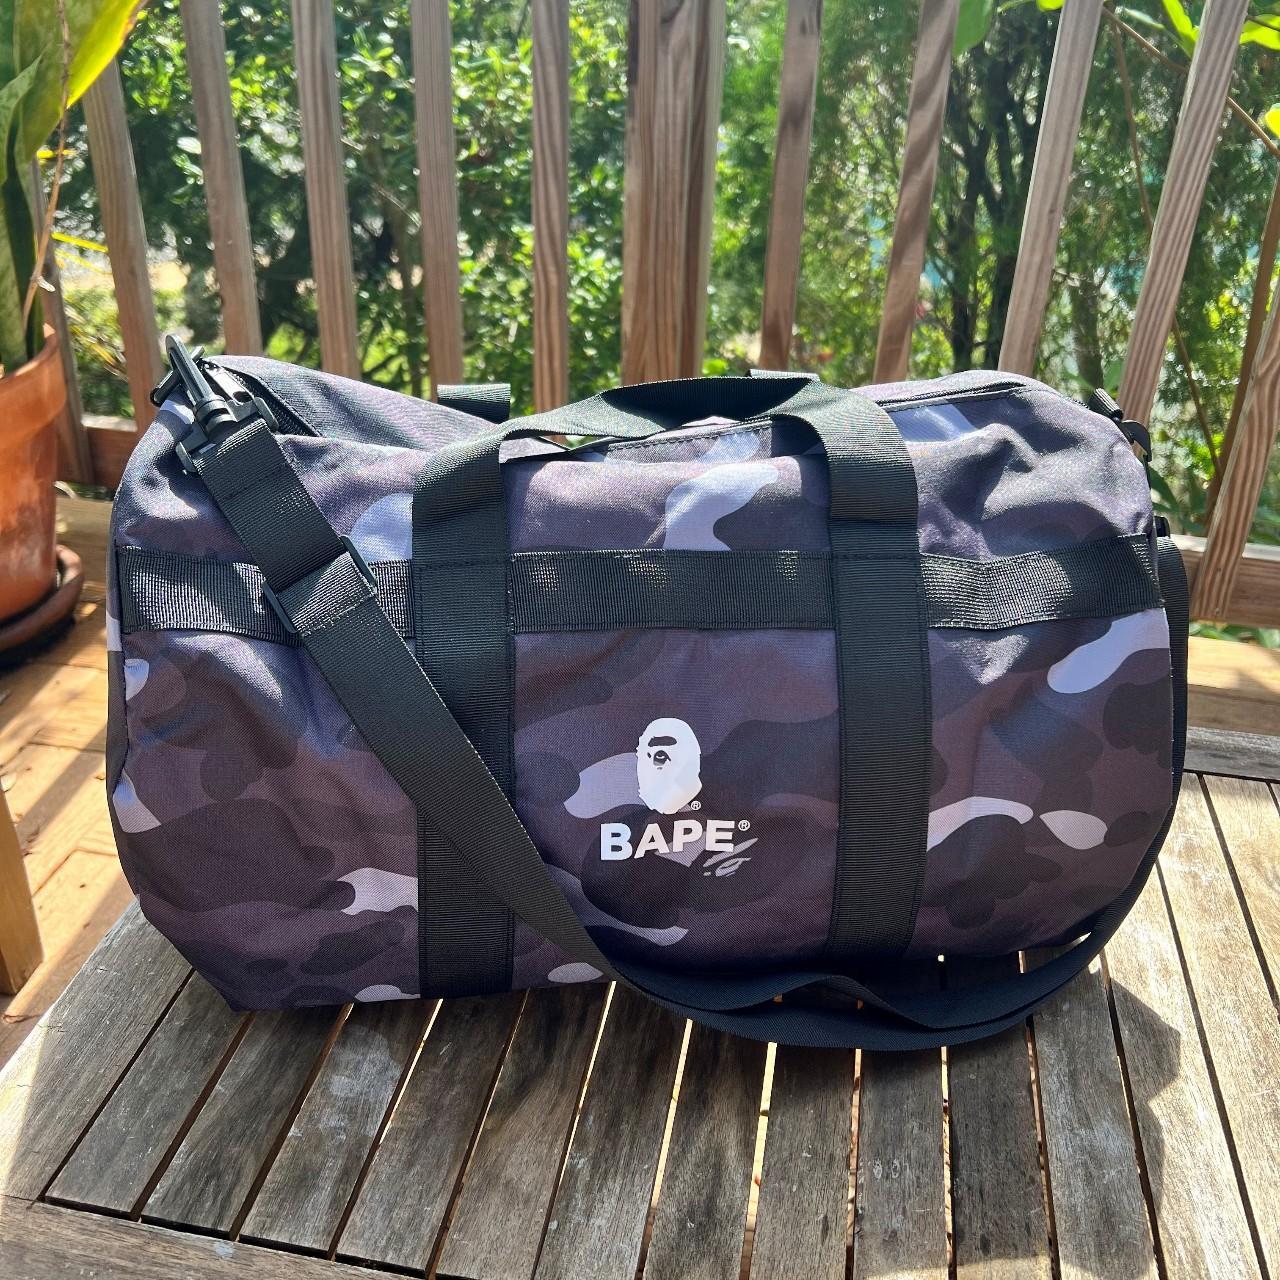 Bape, Bags, A Bathing Ape Bape Camo Duffel Gym Travel Bag